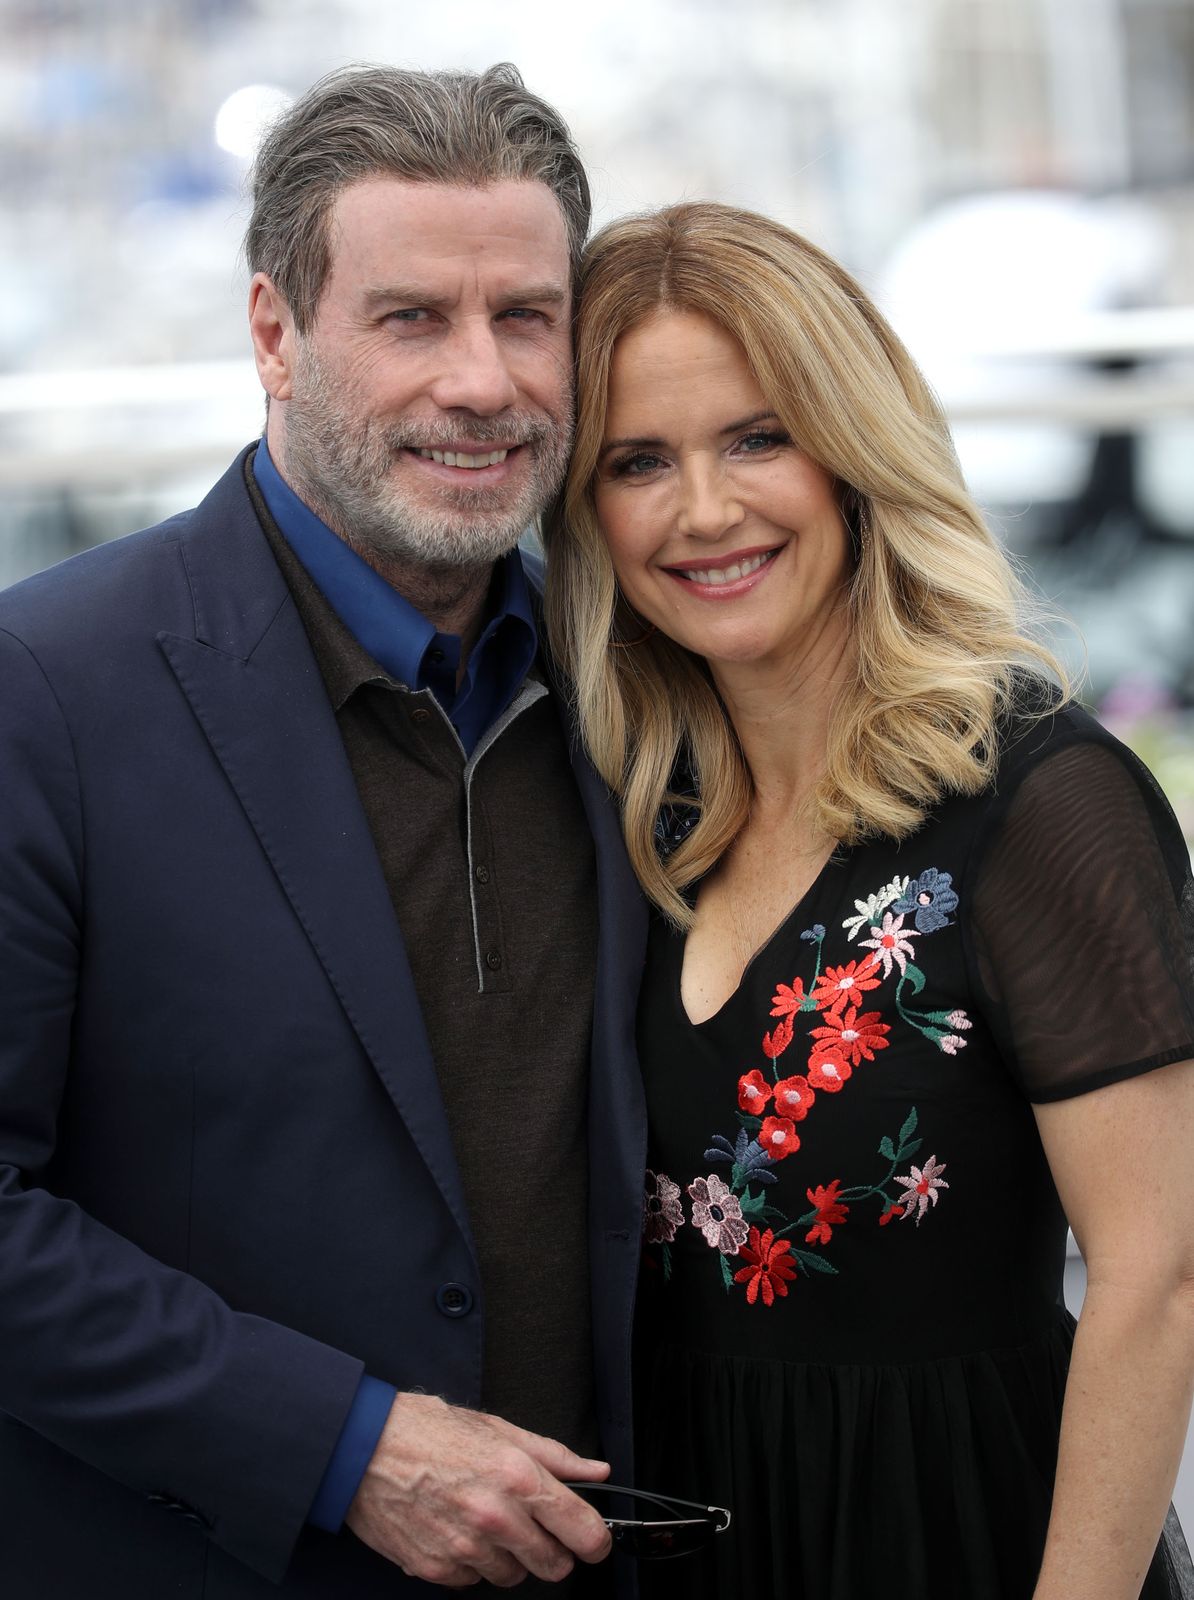 John Travolta und Kelly Preston beim Fototermin für die "Gotti" während der 71. Filmfestspiele von Cannes am 15. Mai 2018 in Frankreich | Foto: Mike Marsland / Mike Marsland / WireImage / Getty Images